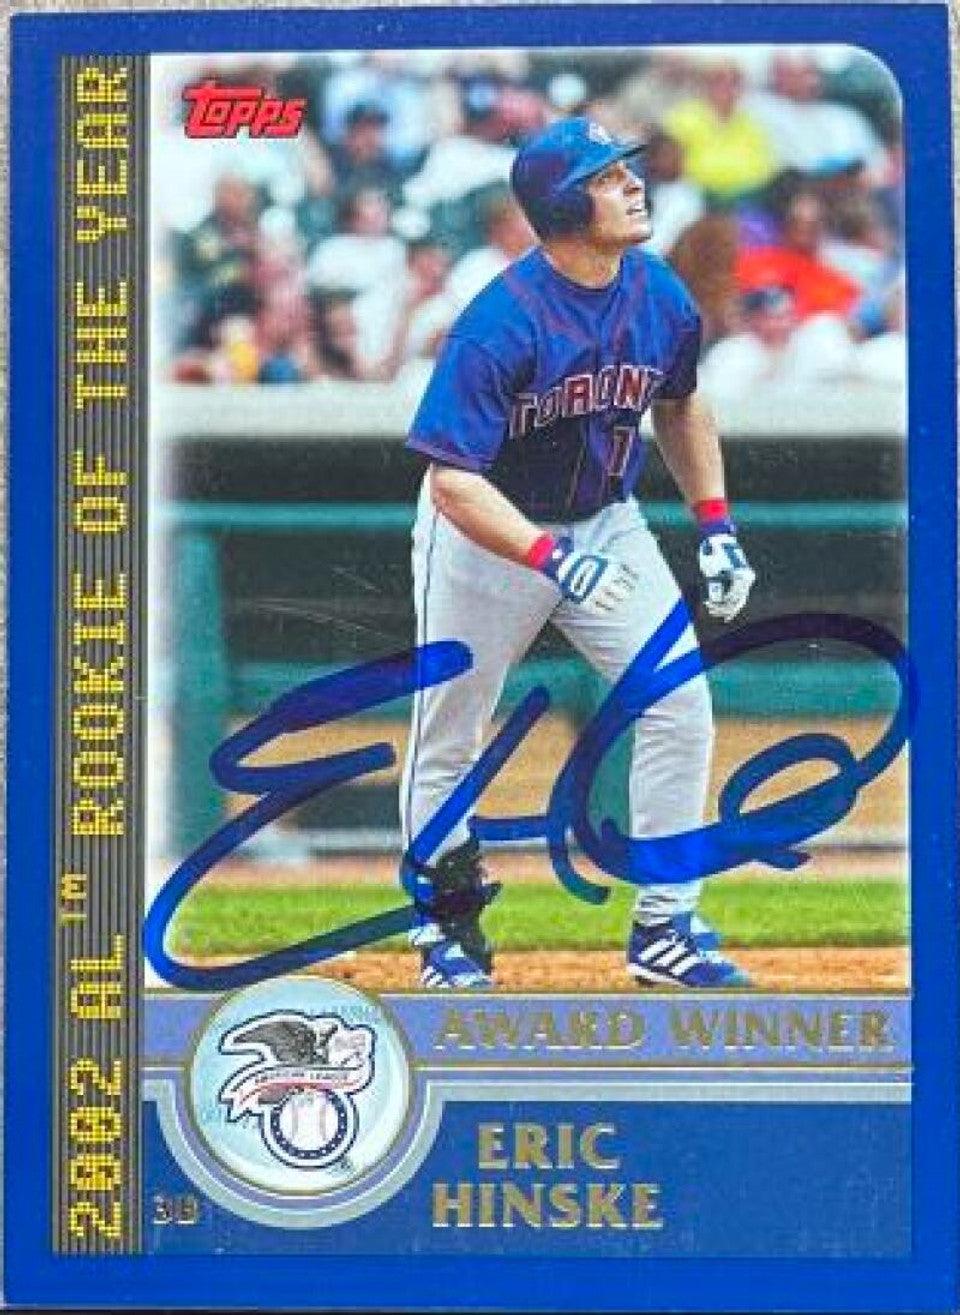 Eric Hinske Signed 2003 Topps Award Winner Baseball Card - Toronto Blue Jays - PastPros